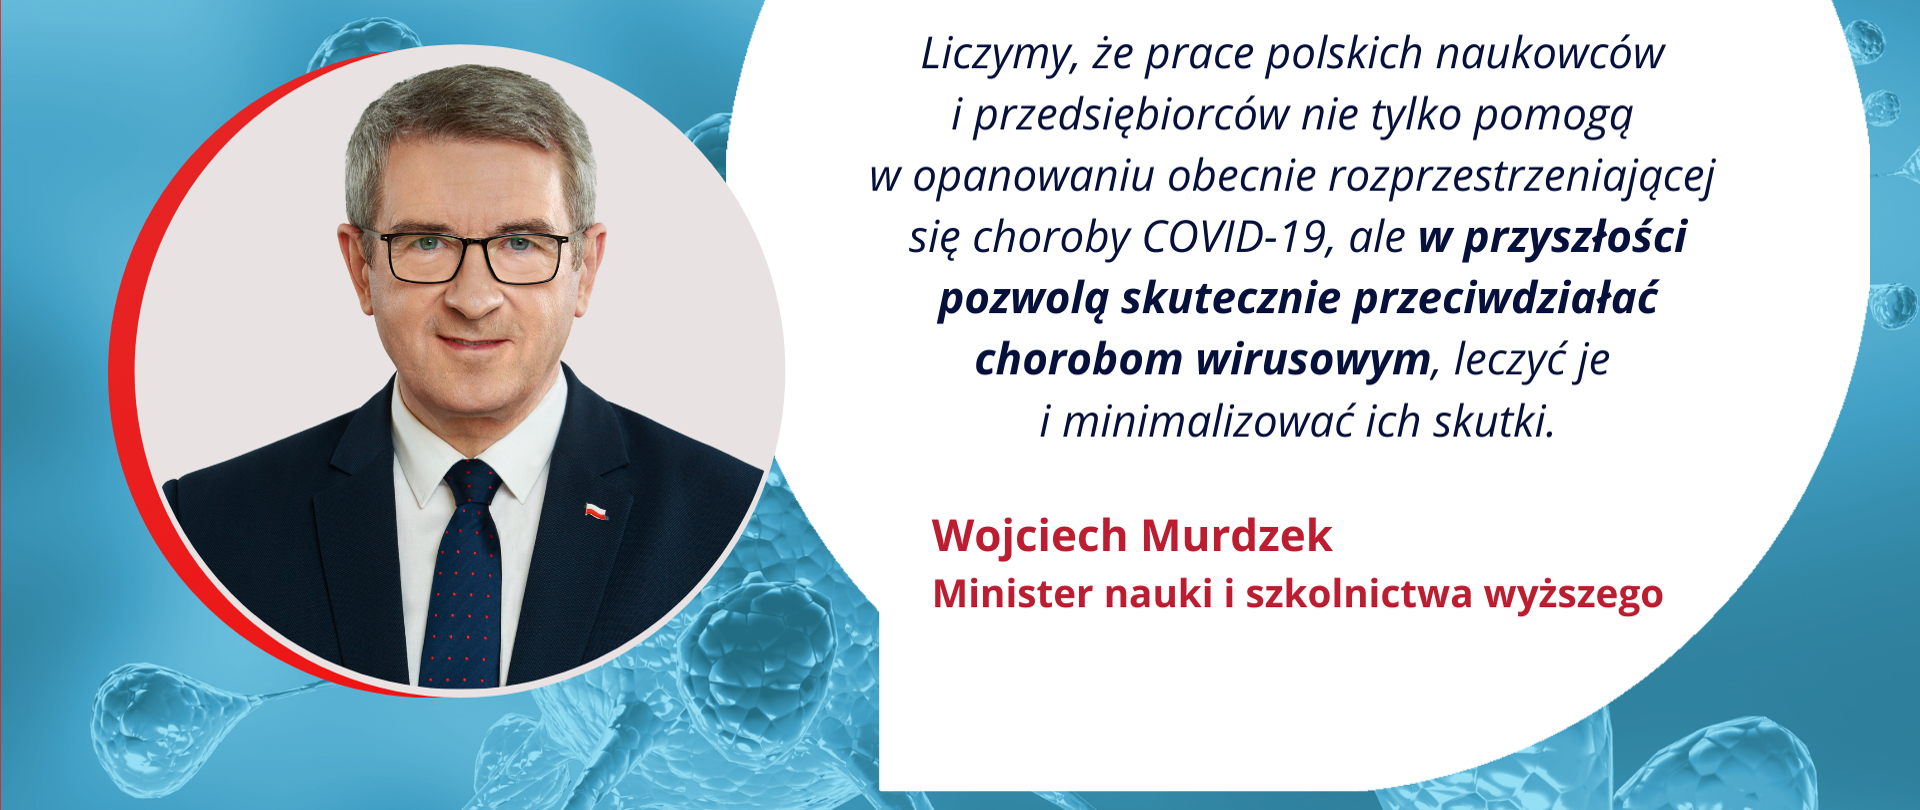 Grafika - minister Wojciech Murdzek i napis: liczymy, że prace polskich naukowców nie tylko w opanowaniu COVID-19, ale pozwolą skutecznie przeciwdziałać chorobom.